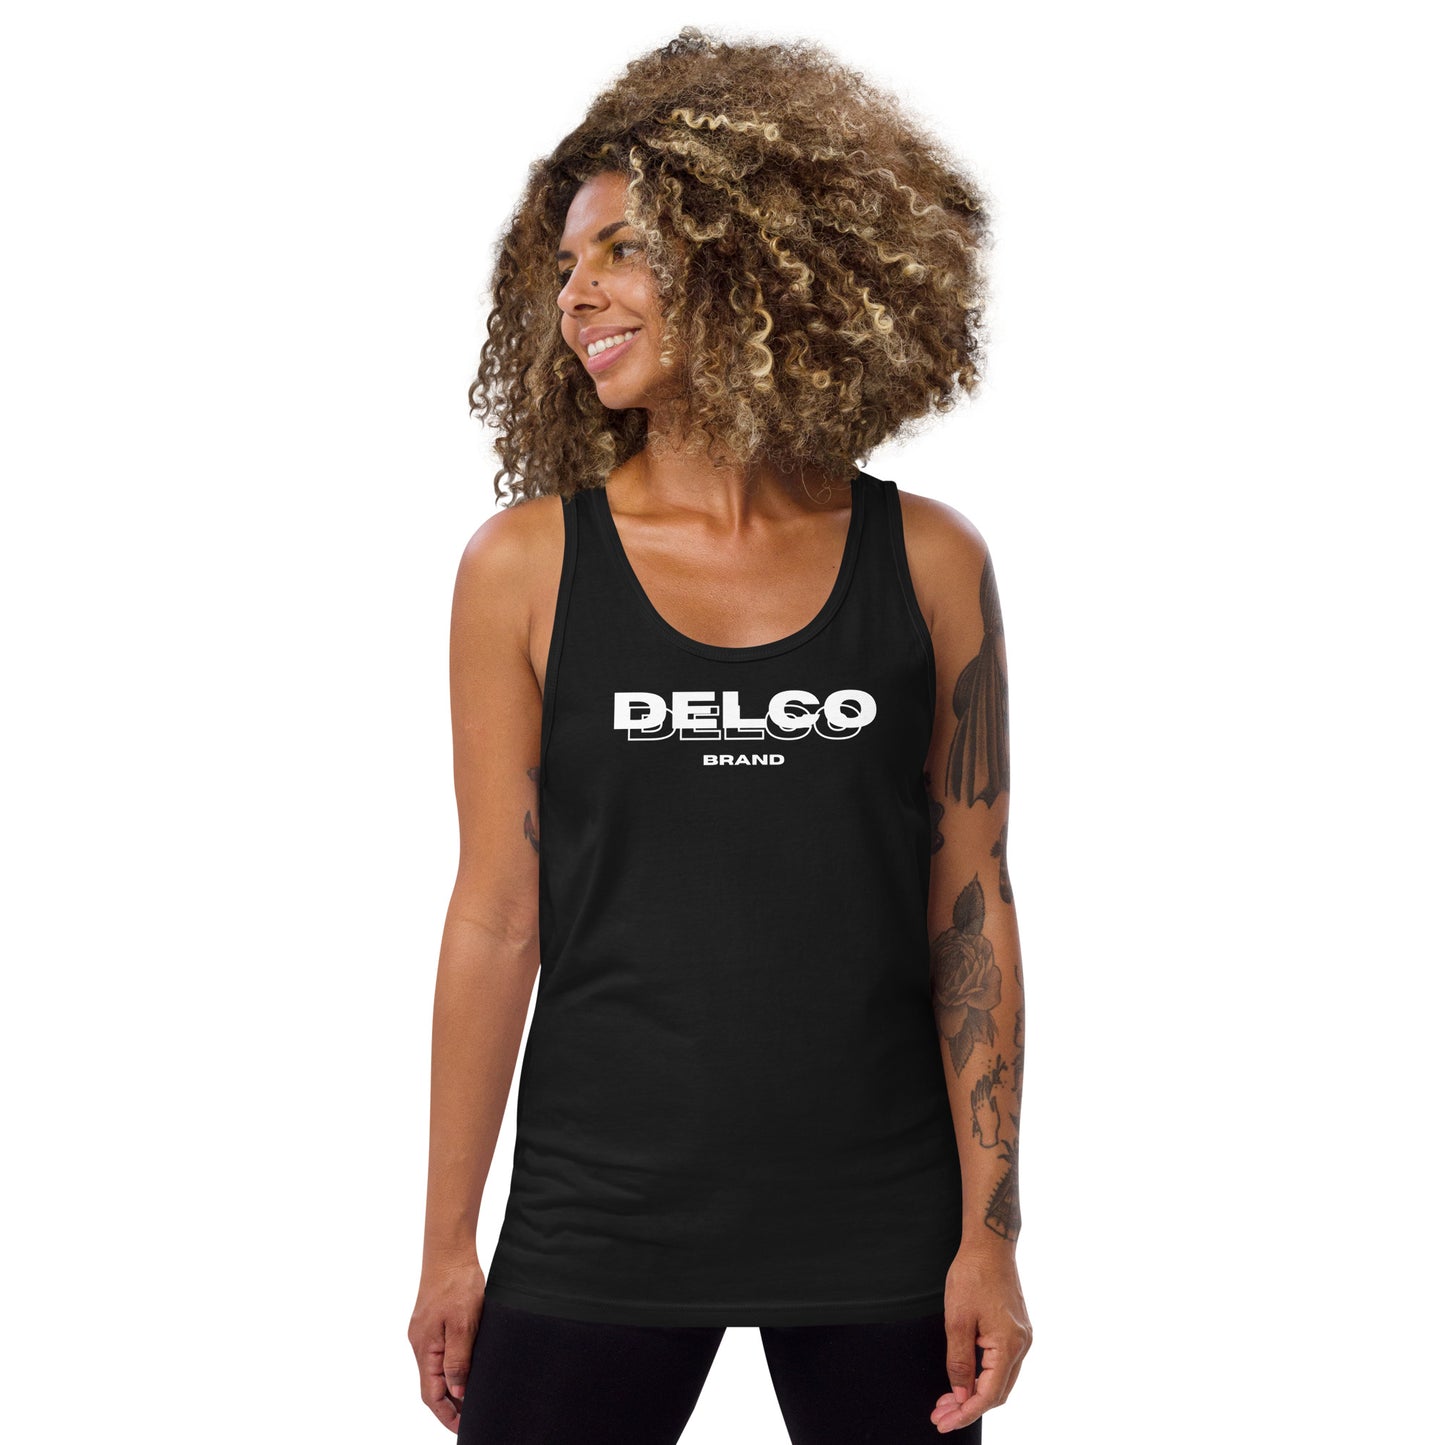 Men's Delco² muscle shirt